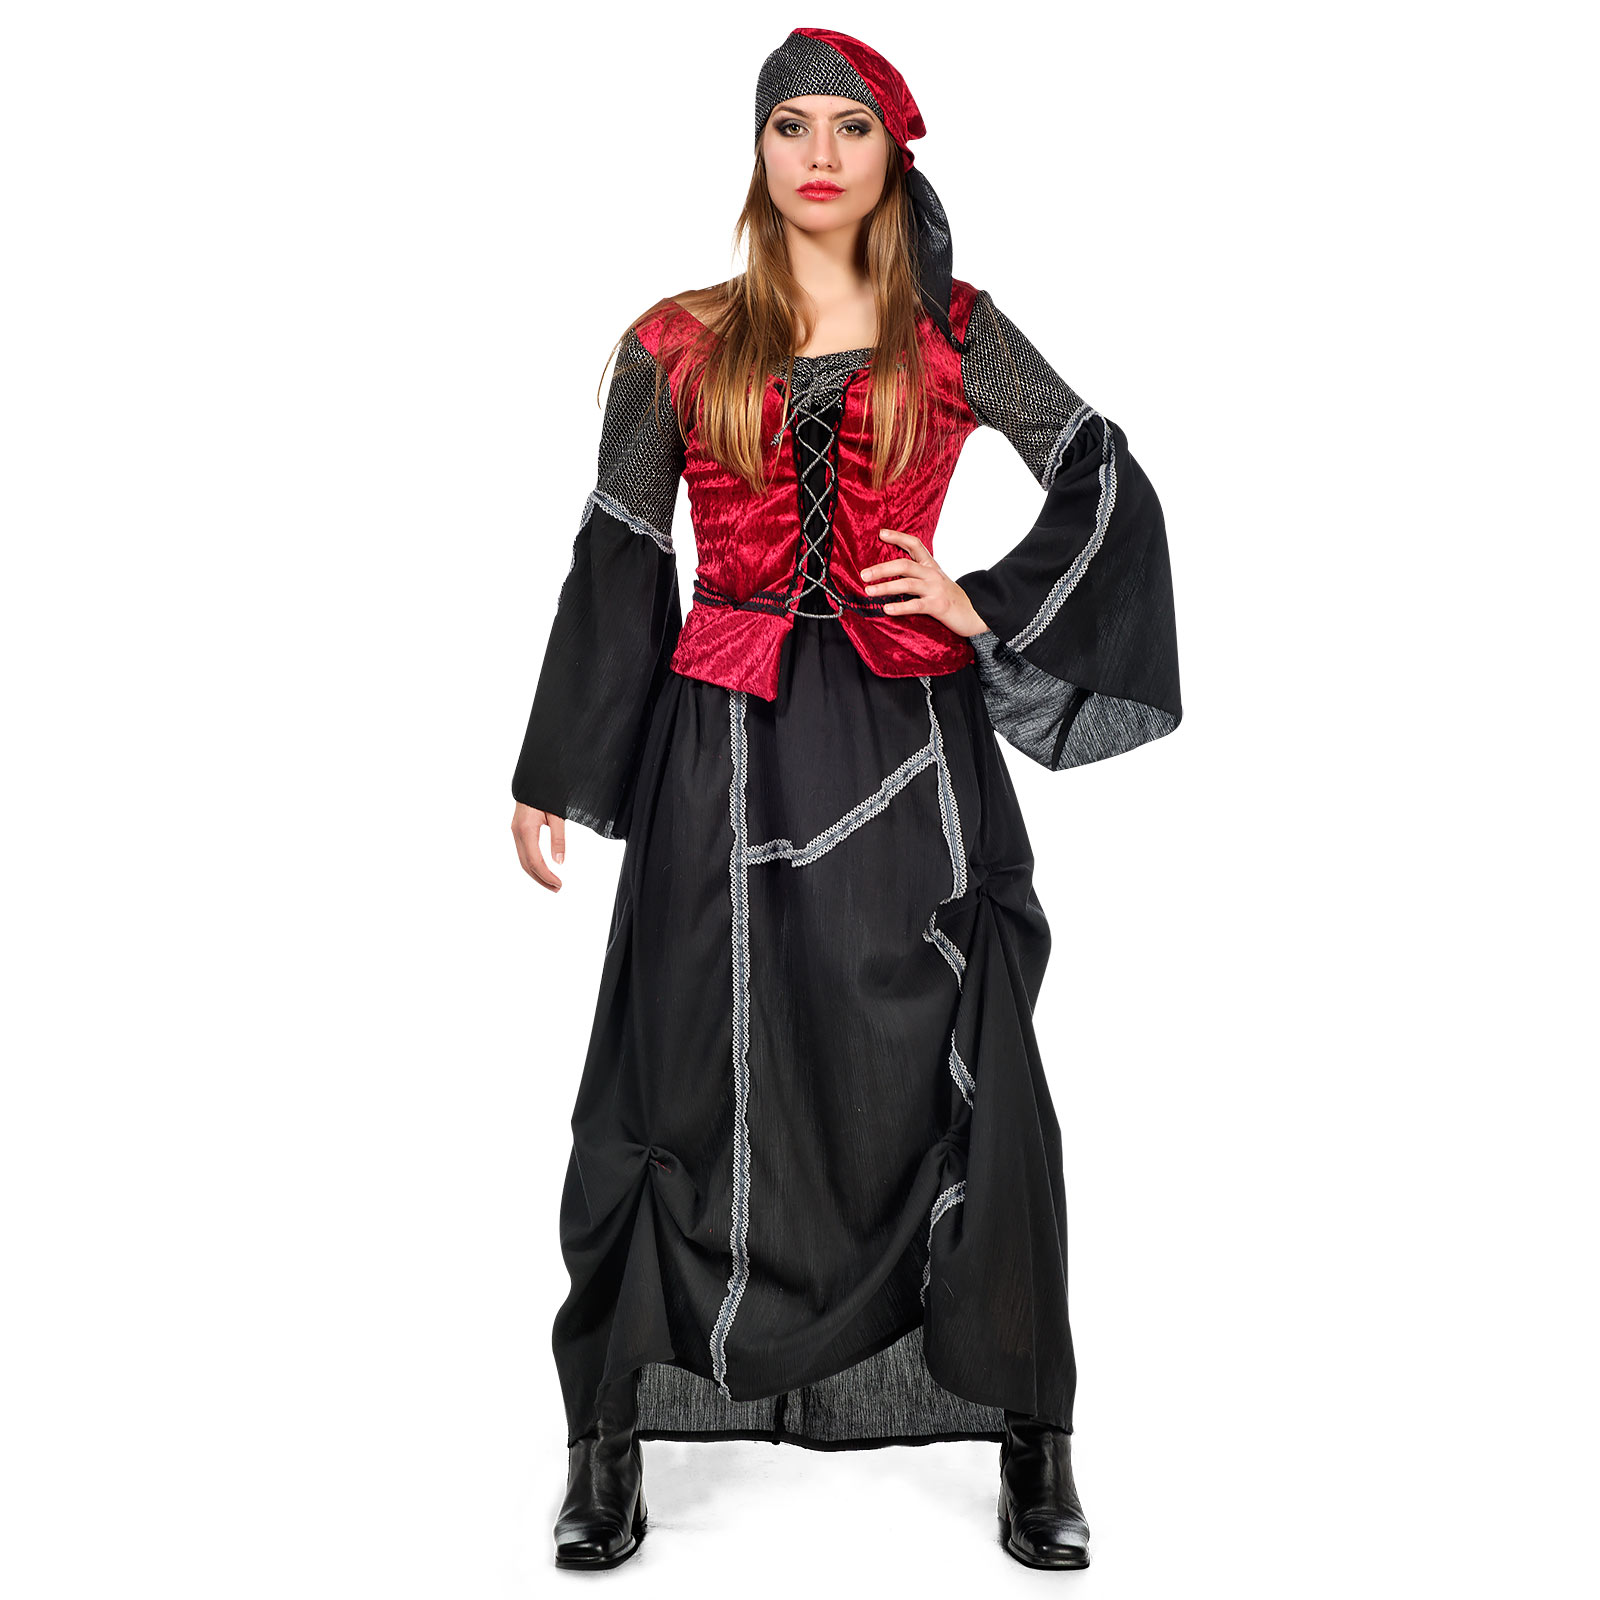 Spanische Piratin - Kostüm Damen